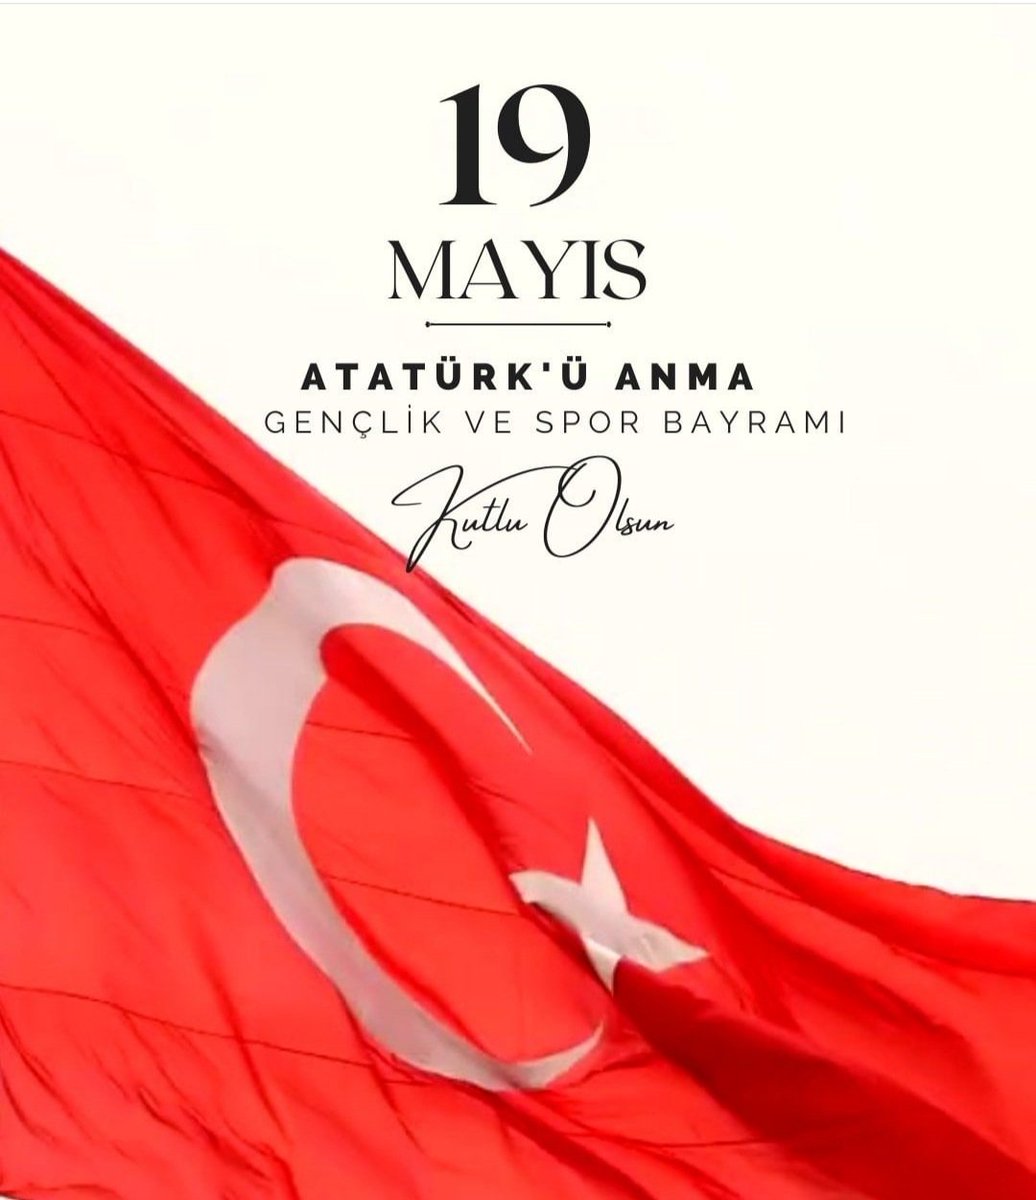 19 MAYIS ATATÜRK'Ü ANMA GENÇLİK VE SPOR BAYRAMI KUTLU OLSUN 🇹🇷🇹🇷🇹🇷
#kusadasi
#19MayısGenclikveSporBayramı
#19MAYIS1919
#Ataturk
#genclikvesporbayramı
#19MAYIS1919